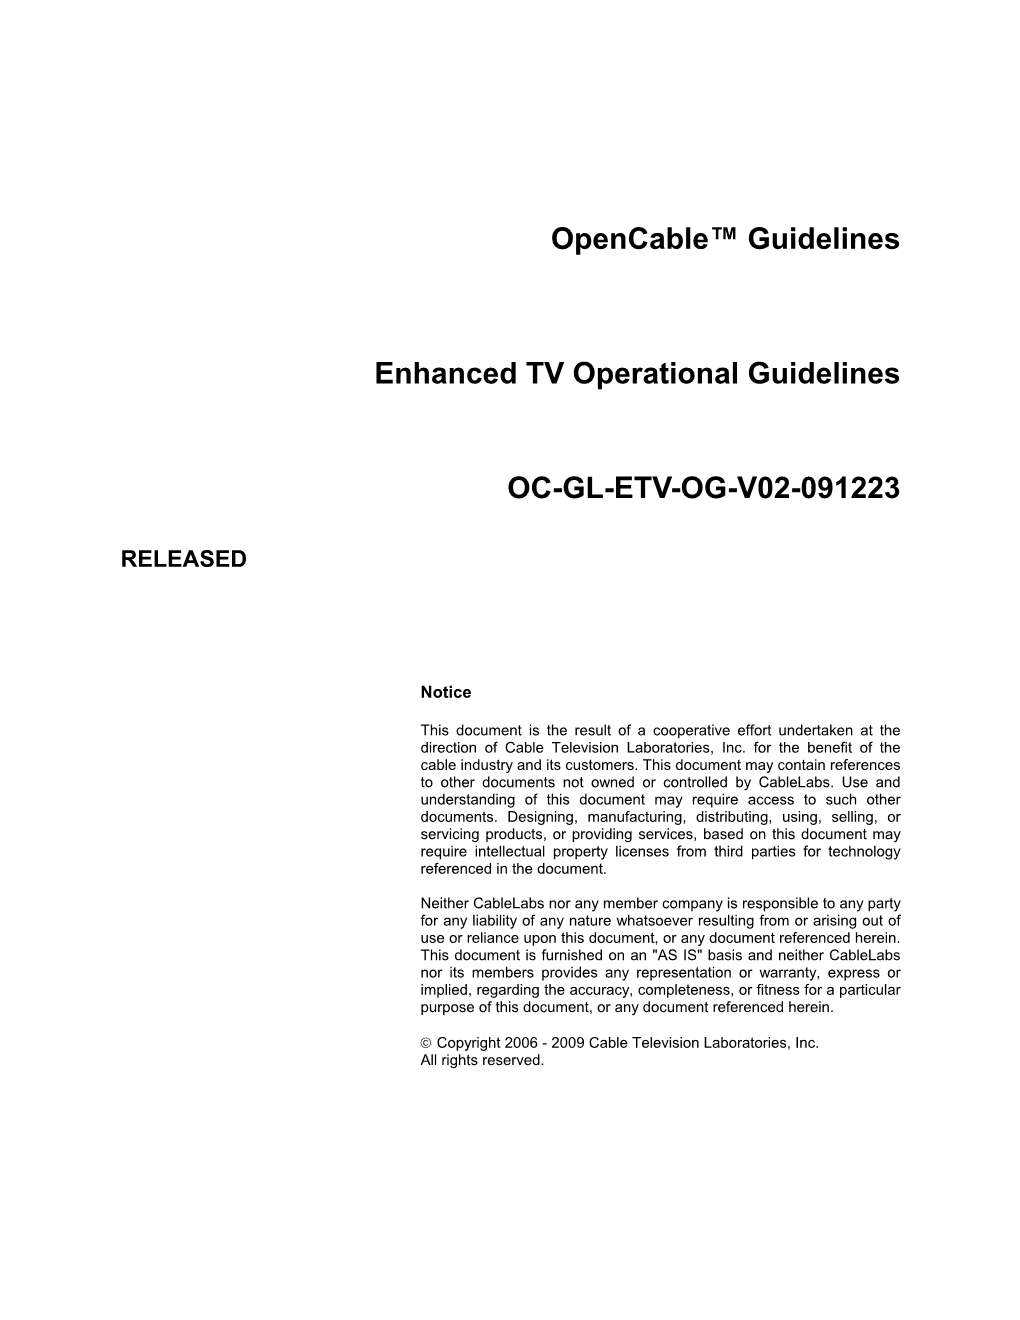 Oc-Gl-Etv-Og-V02-091223